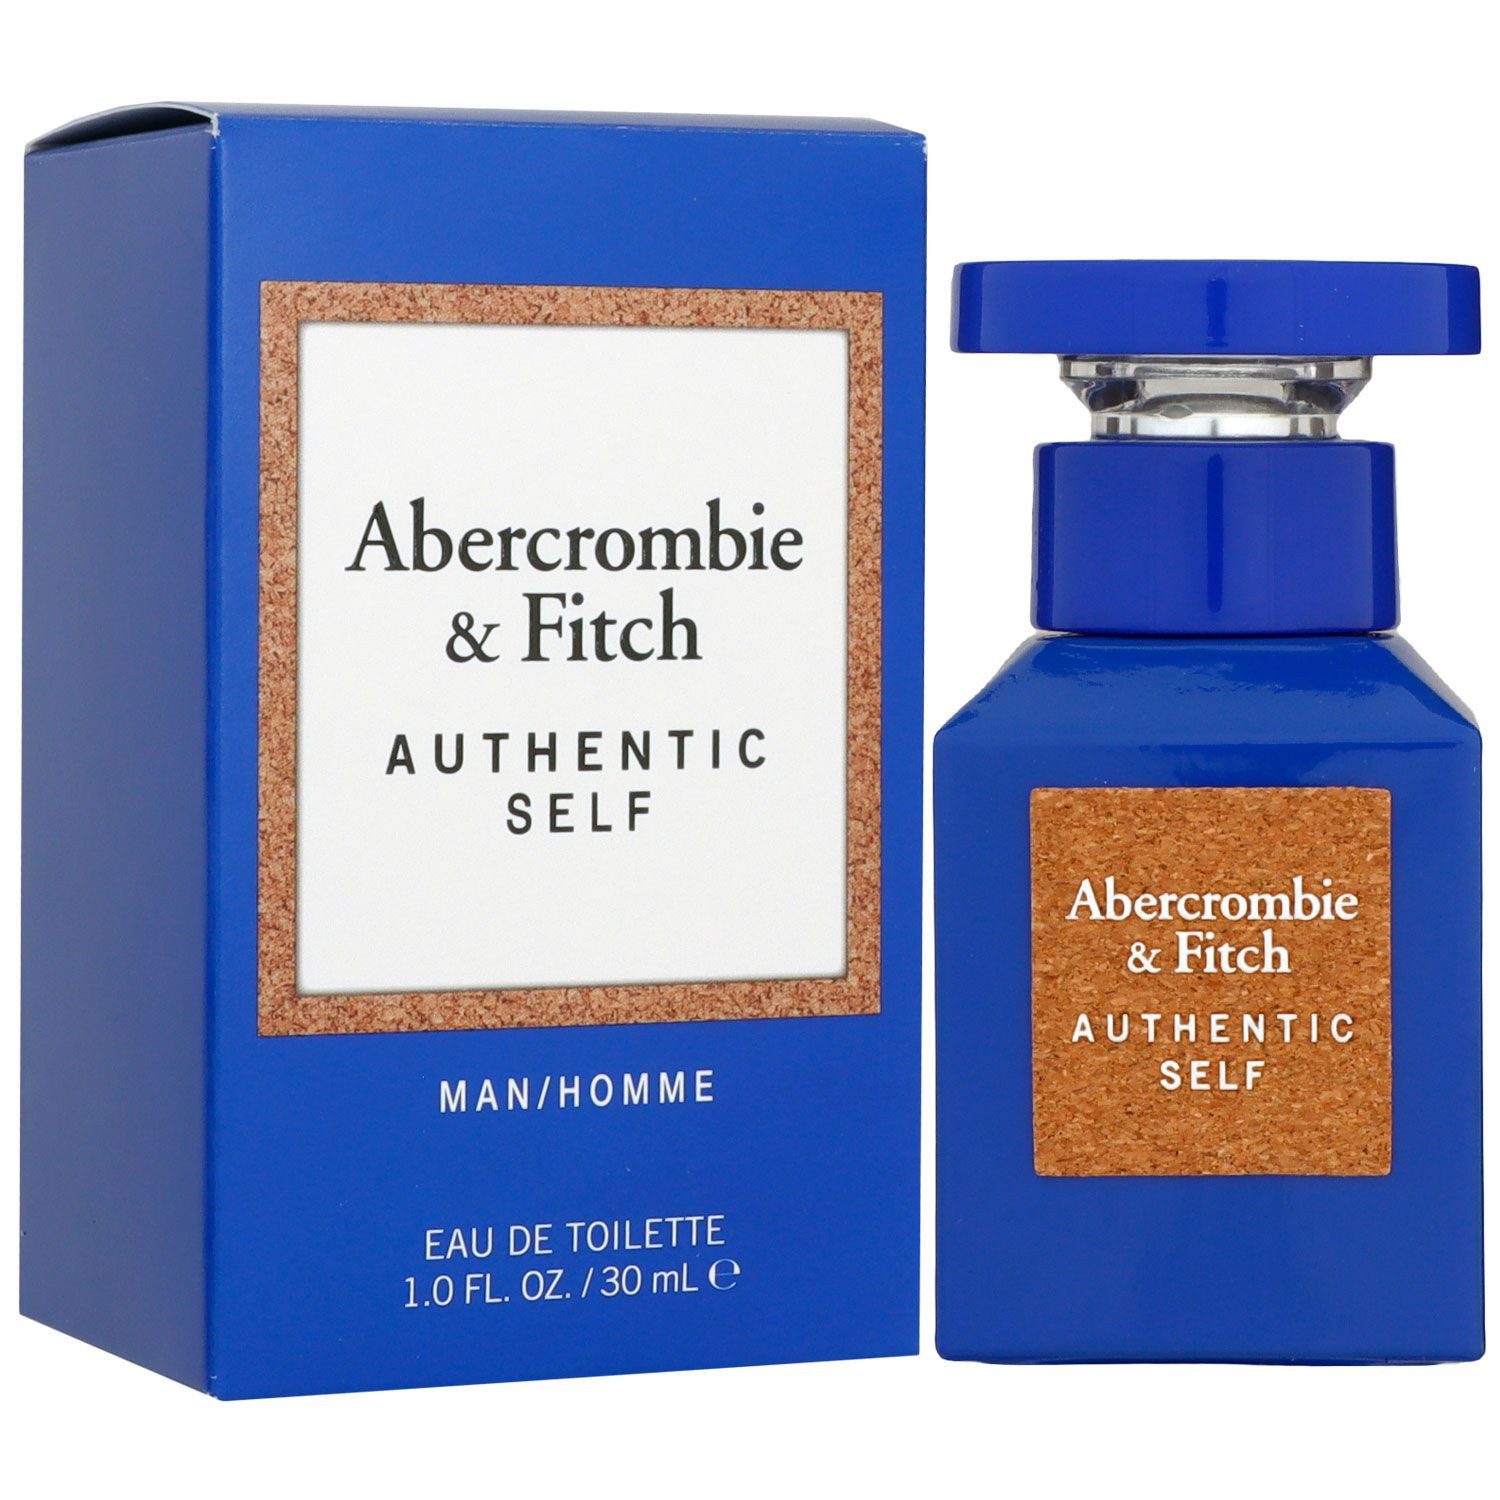 Abercrombie & Fitch Eau de Toilette Authentic Self Man 30 ml